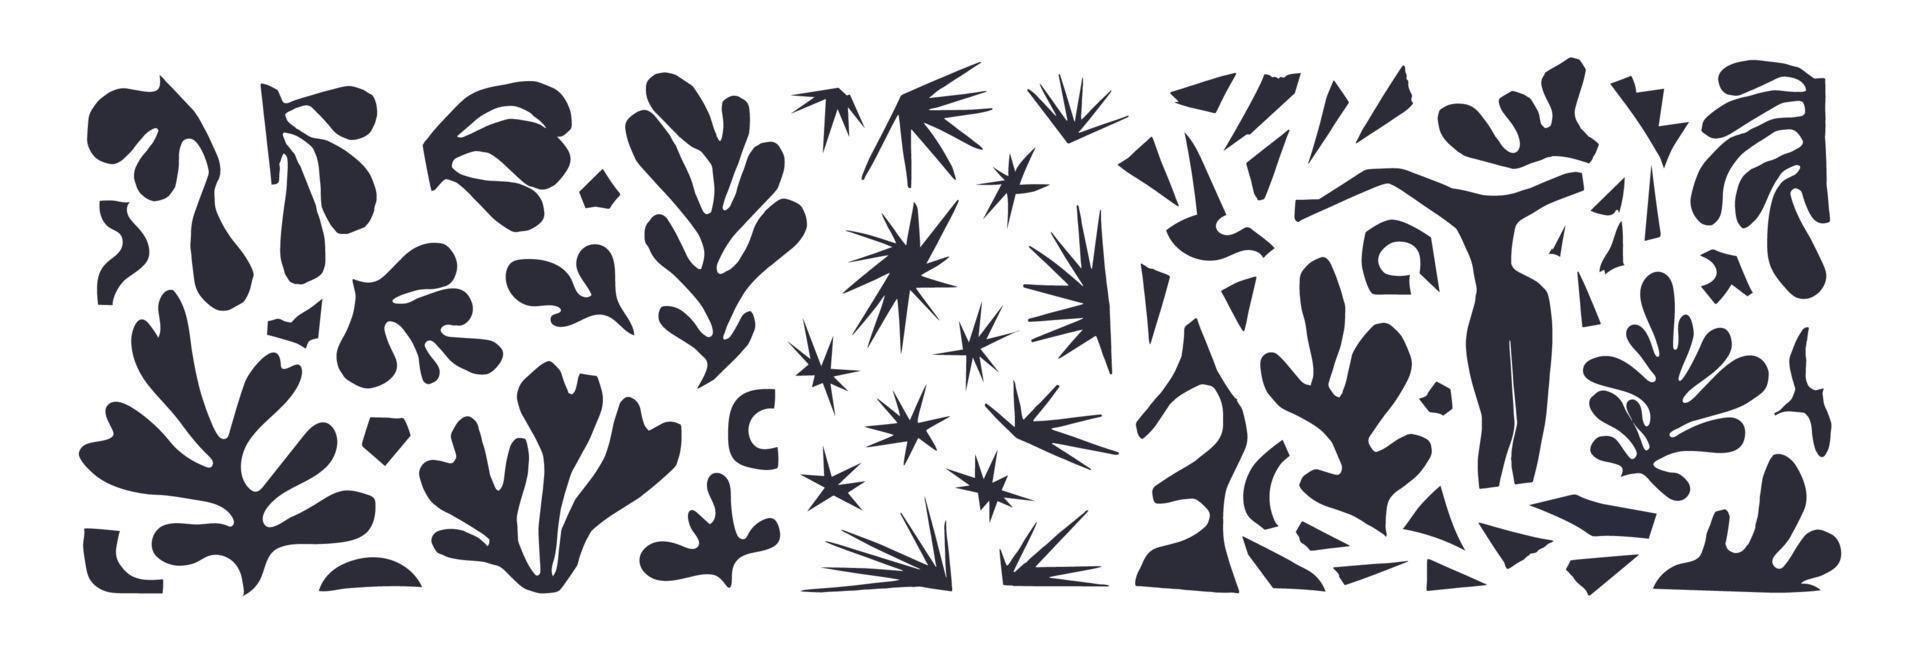 um conjunto de plantas abstratas e diferentes formas inspiradas em matisse. ilustração vetorial preto em recortes de papel branco isolados sobre fundo azul. figura feminina, estrelas, restos de algas de papel cortado. vetor